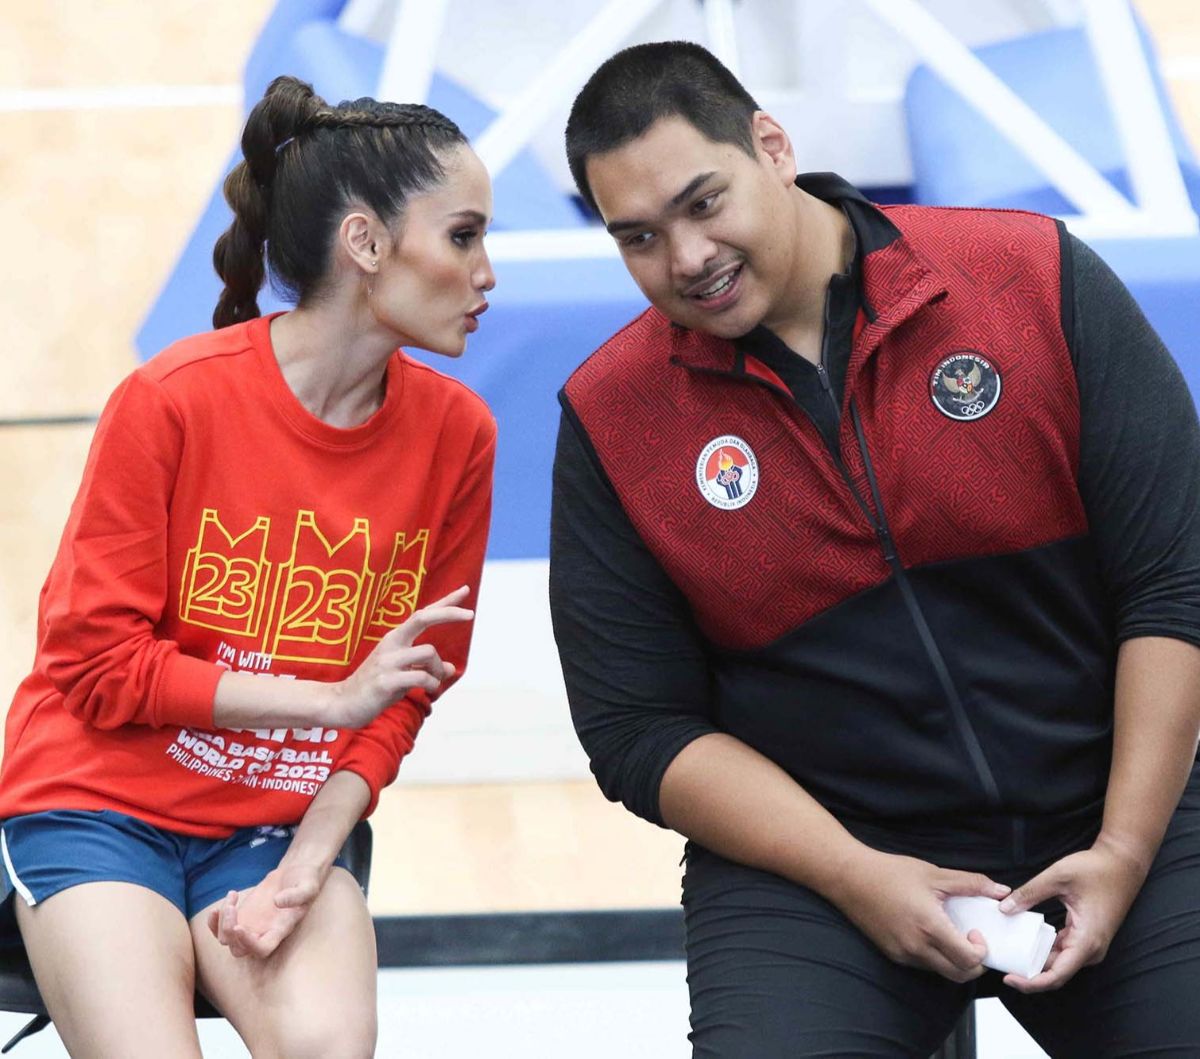 Didaulatnya Cinta Laura sebagai Duta Piala Dunia Bola Basket FIBA 2023 diharapkan dapat mendongkrak popularitas Indonesia sebagai penyelenggara di mata dunia.